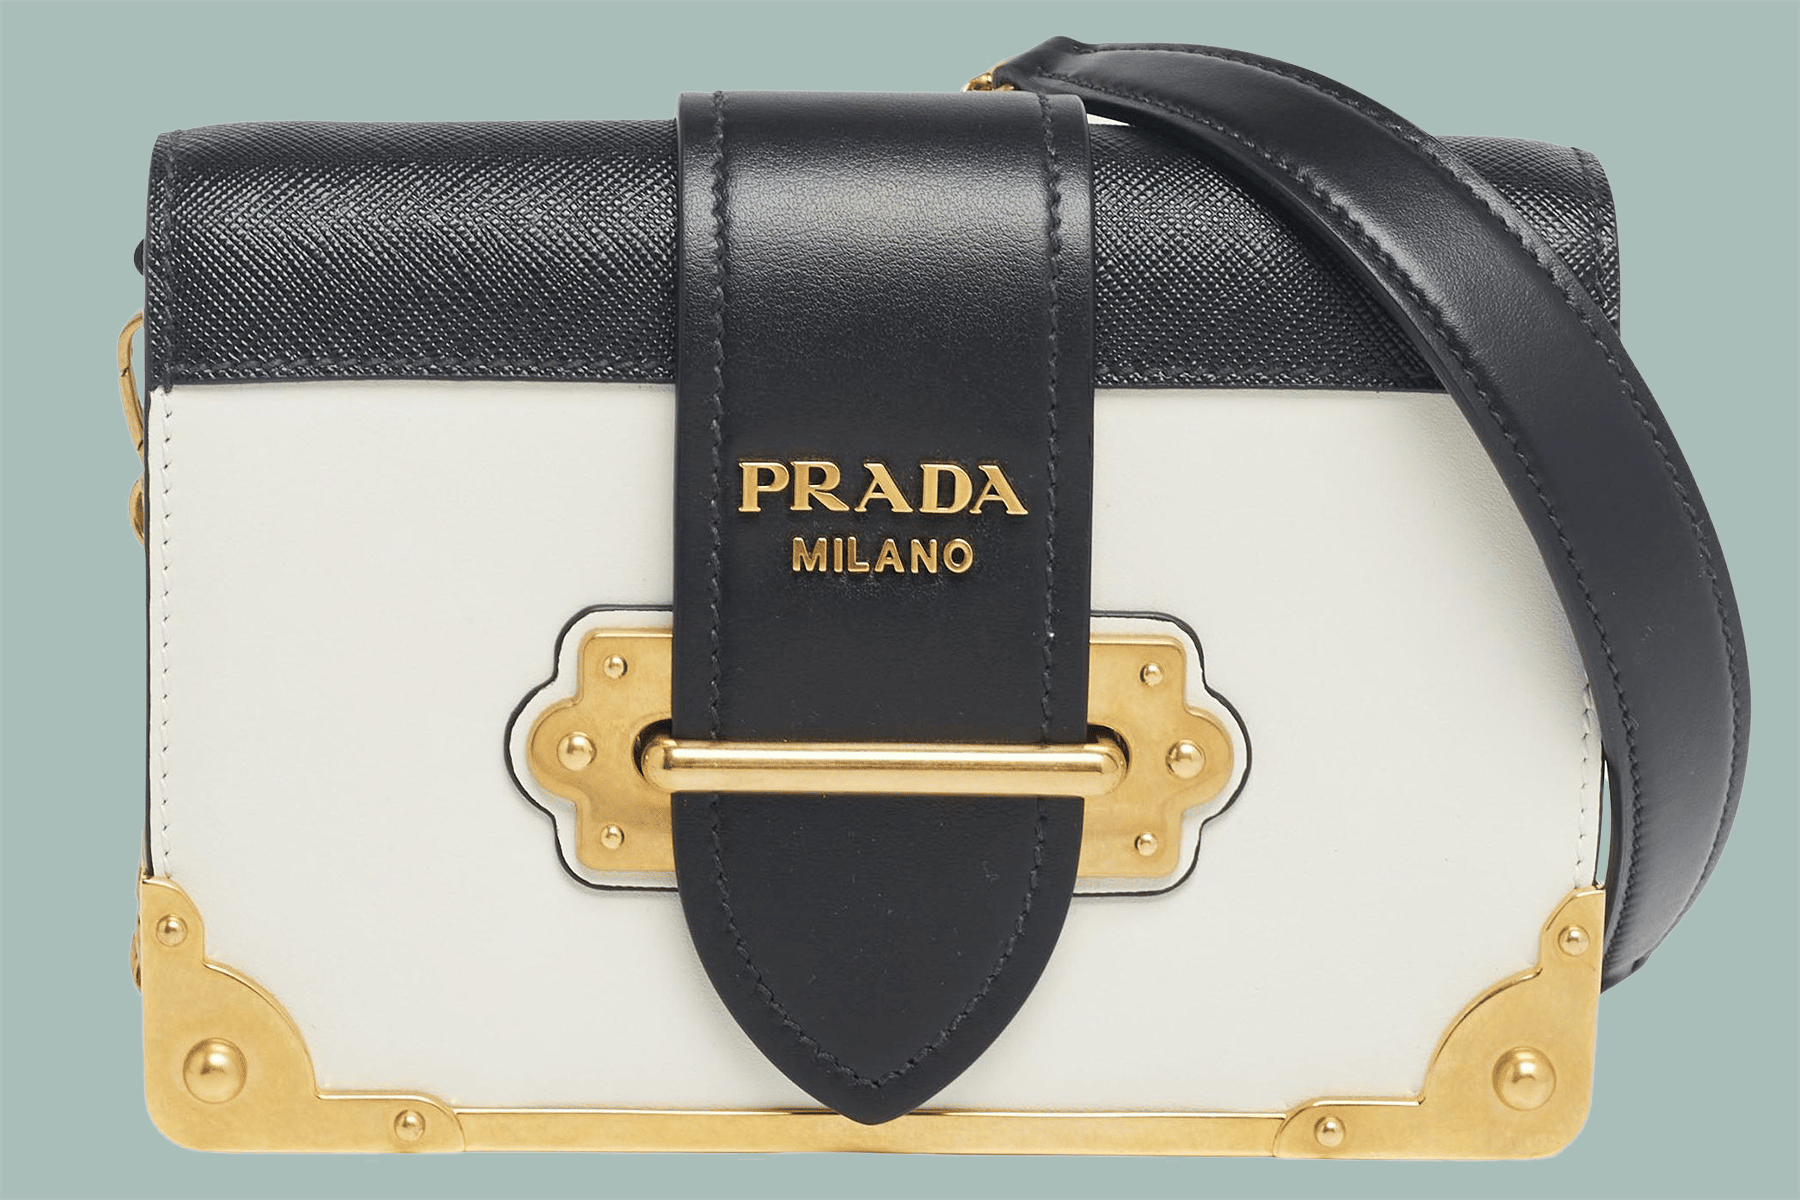 How to Spot a Fake Prada Bag